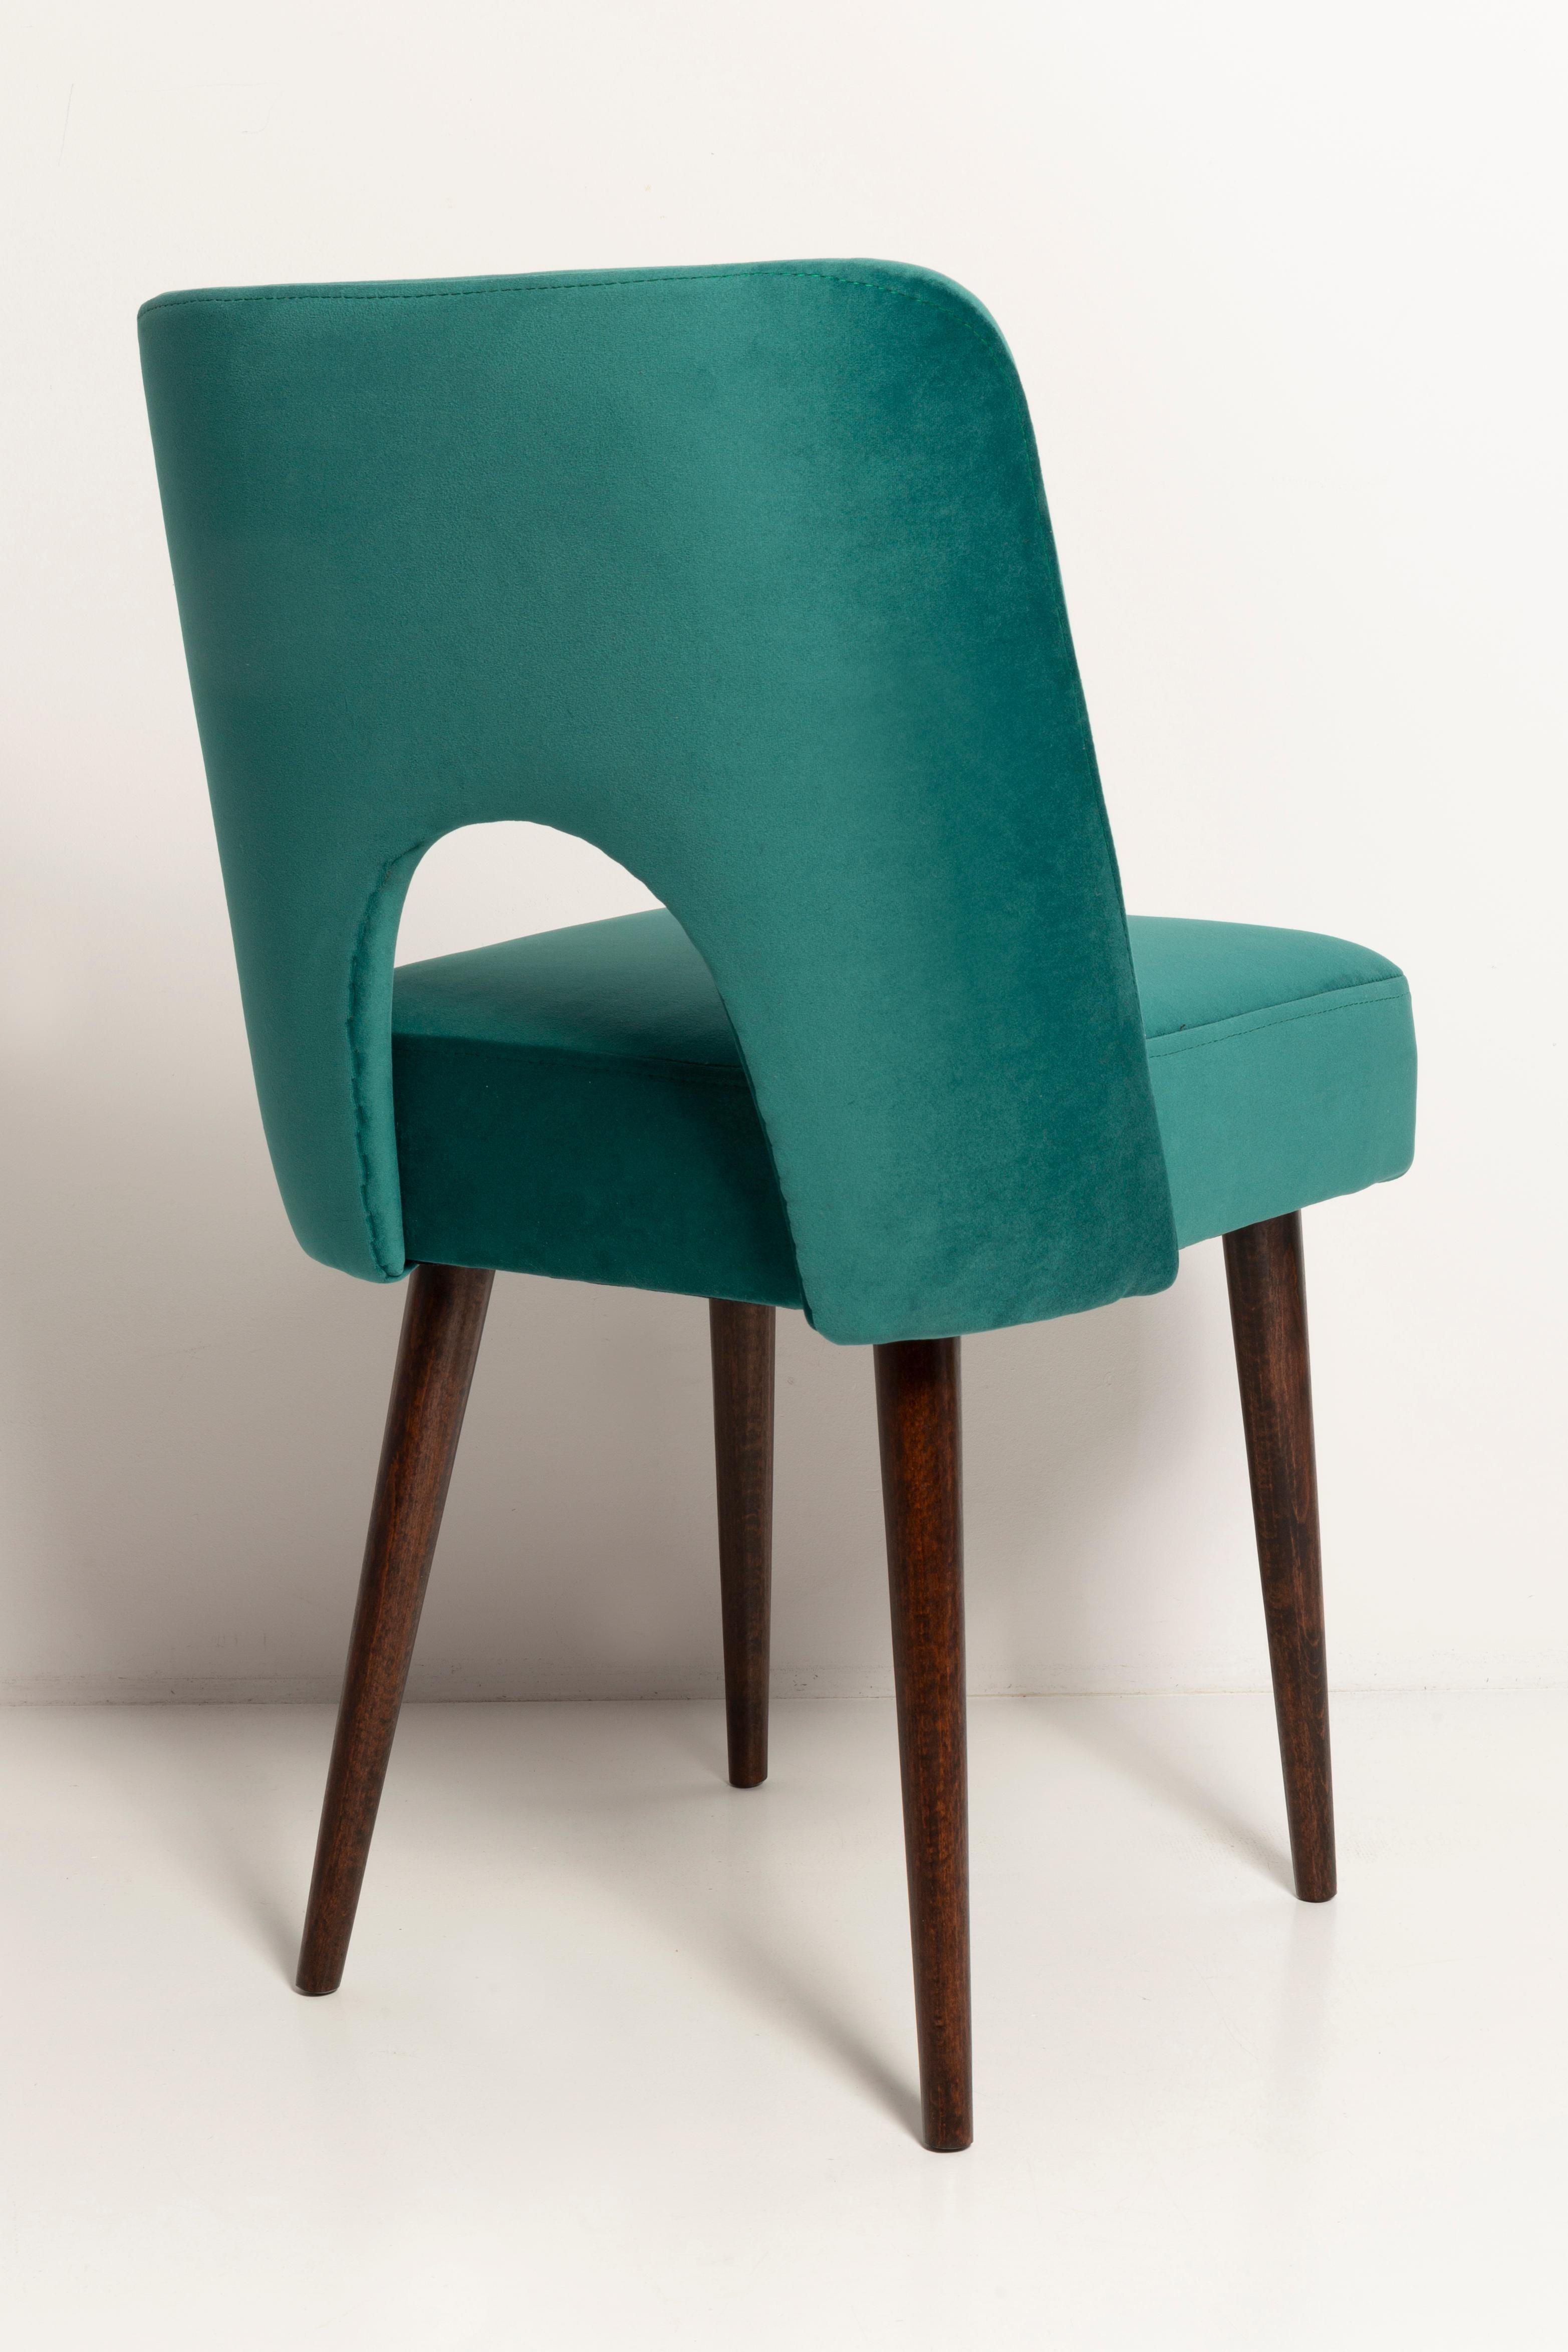 Seven Velvet 'Shell' Chairs, Dark Green Velvet, Dark Beech Wood, Europe, 1960s For Sale 3